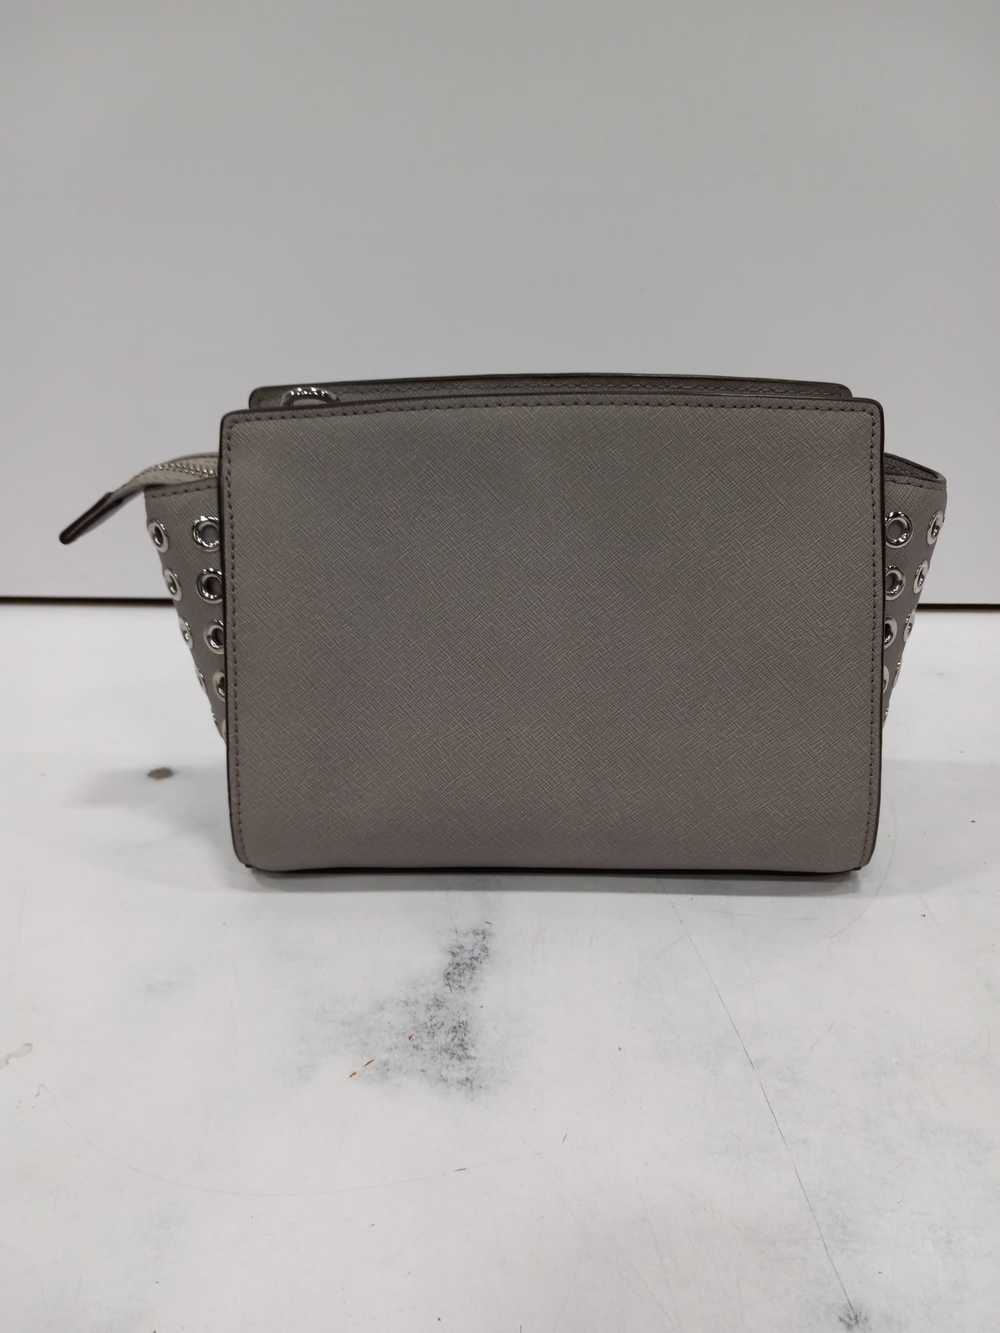 Michael Kors Selma Grey Leather Handbag - image 4